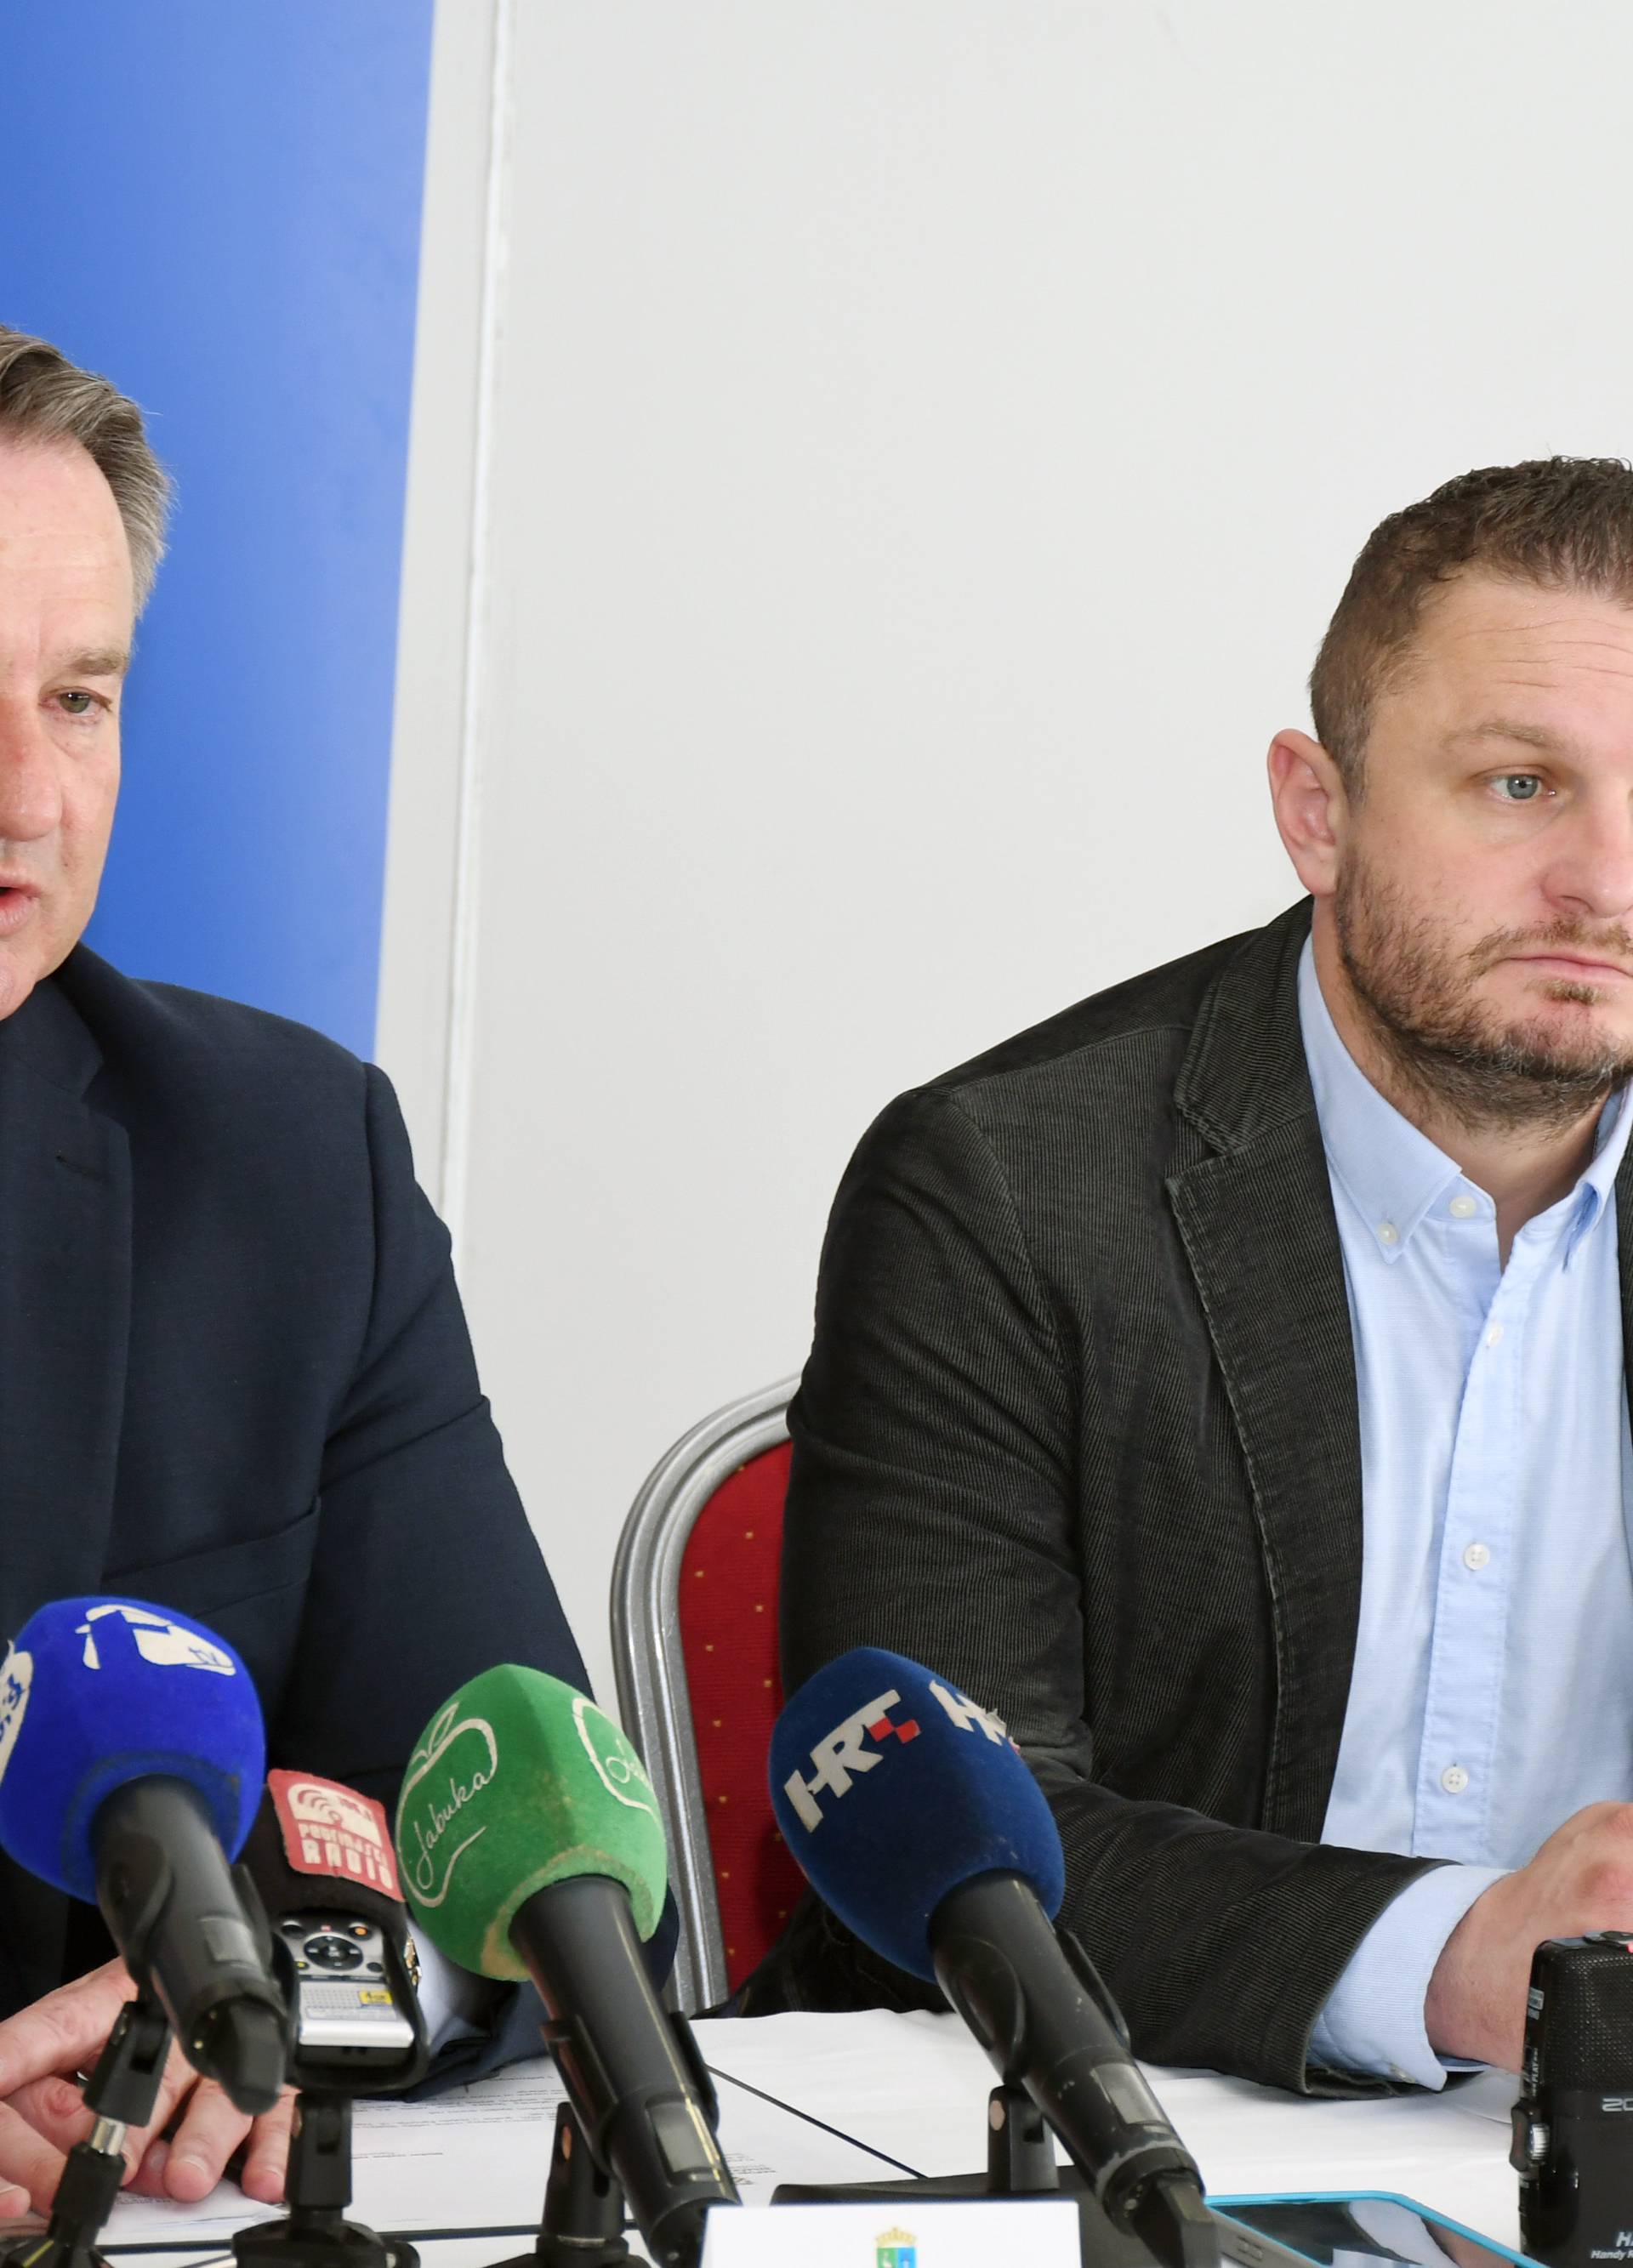 Sisačko-moslavački župan Žinić i dožupan Rosavec održali konferenciju o koronavirusu